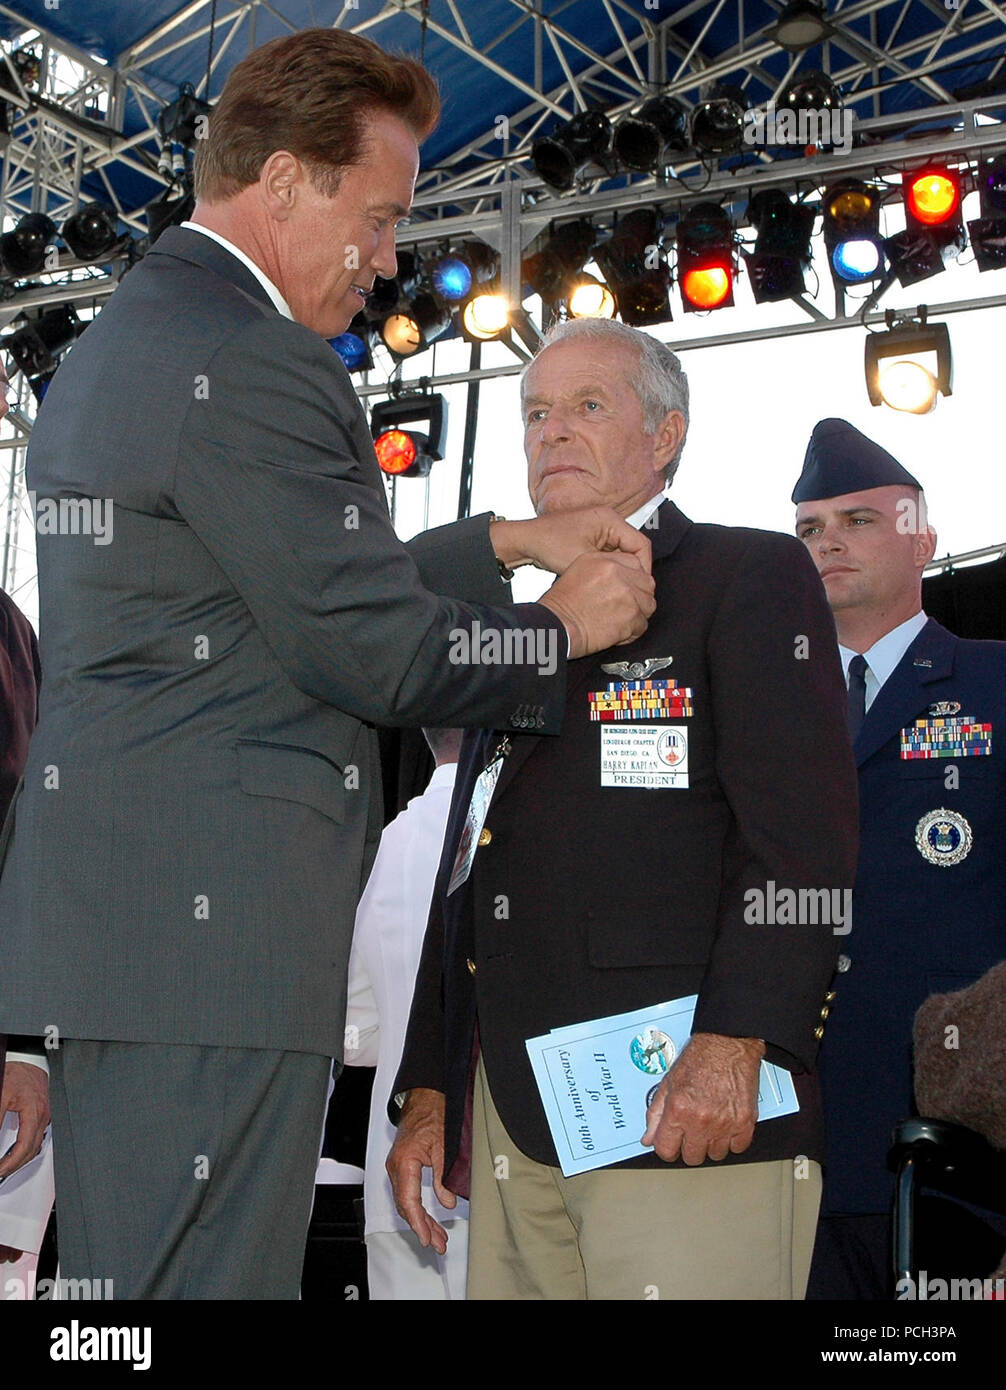 San Diego, Californie (29 mai 2005) - California Gov. Arnold Schwarzenegger awards une 'rupture' de canard à l'Army Air Corps Harry Vétéran Kaplan lors d'une cérémonie du 60e ANNIVERSAIRE DE LA SECONDE GUERRE MONDIALE. Le canard 'rupture' fut donné à des membres du service en tout honneur renvoyé du service pendant la DEUXIÈME GUERRE MONDIALE. La cérémonie a été organisée par le ministère de la Défense La Seconde Guerre mondiale, Commémoration du 60e anniversaire de la Commission de rendre hommage et de reconnaître les anciens combattants de la Seconde Guerre mondiale pour leur excellent service et sacrifice pendant la fin de semaine du Memorial Day. La Marine américaine Banque D'Images